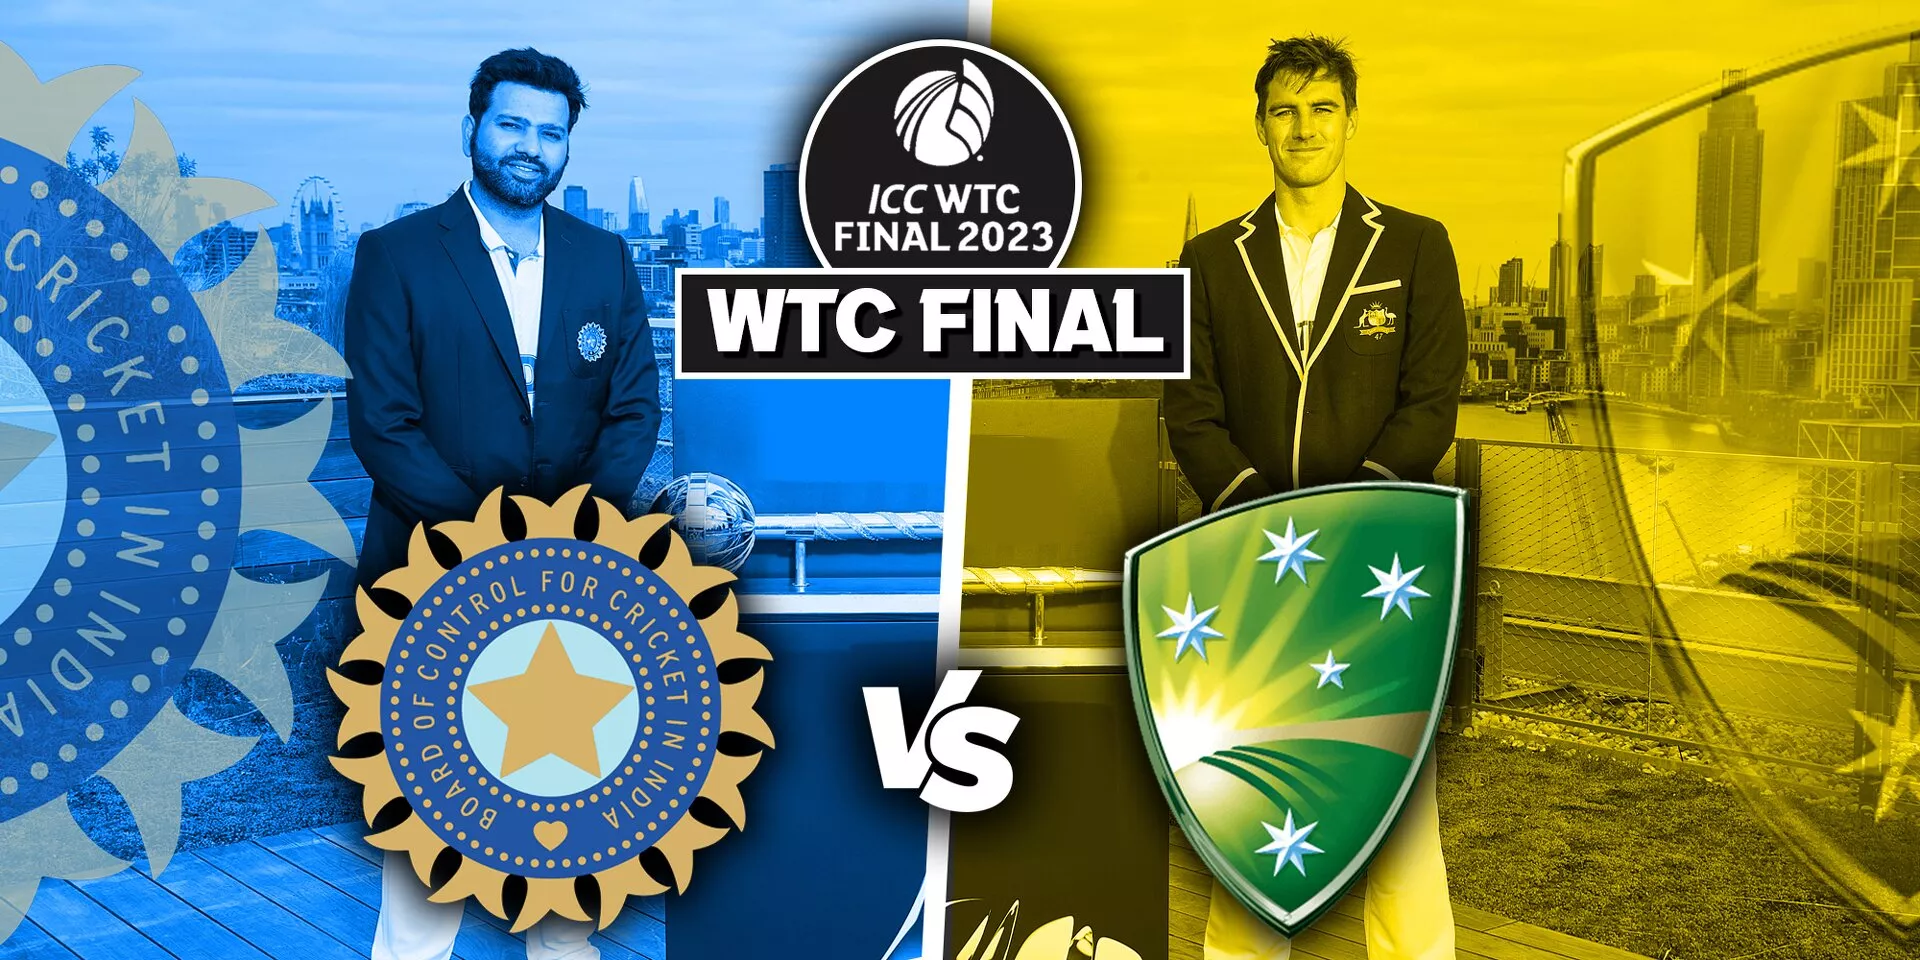 AUS vs IND: WTC 2023 के खिताबी जंग में दांव पर भारत और ऑस्ट्रेलिया की प्रतिष्ठा